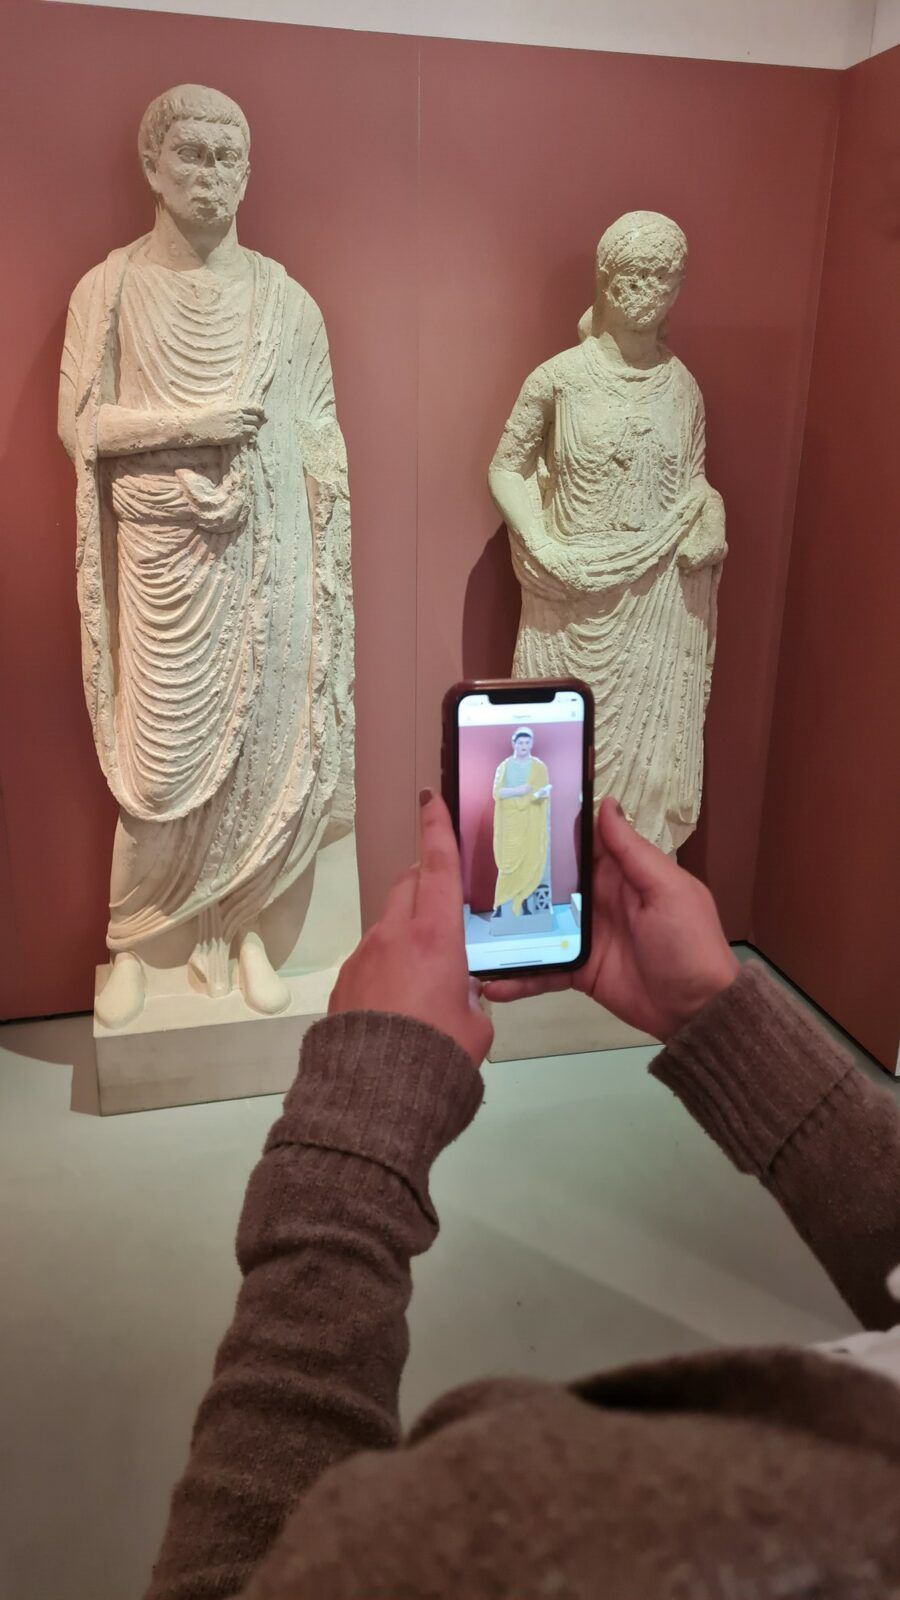 Zu sehen sind Grabfiguren, deren farbliche Darstellung auf dem Smartphone rekonstruiert wird.